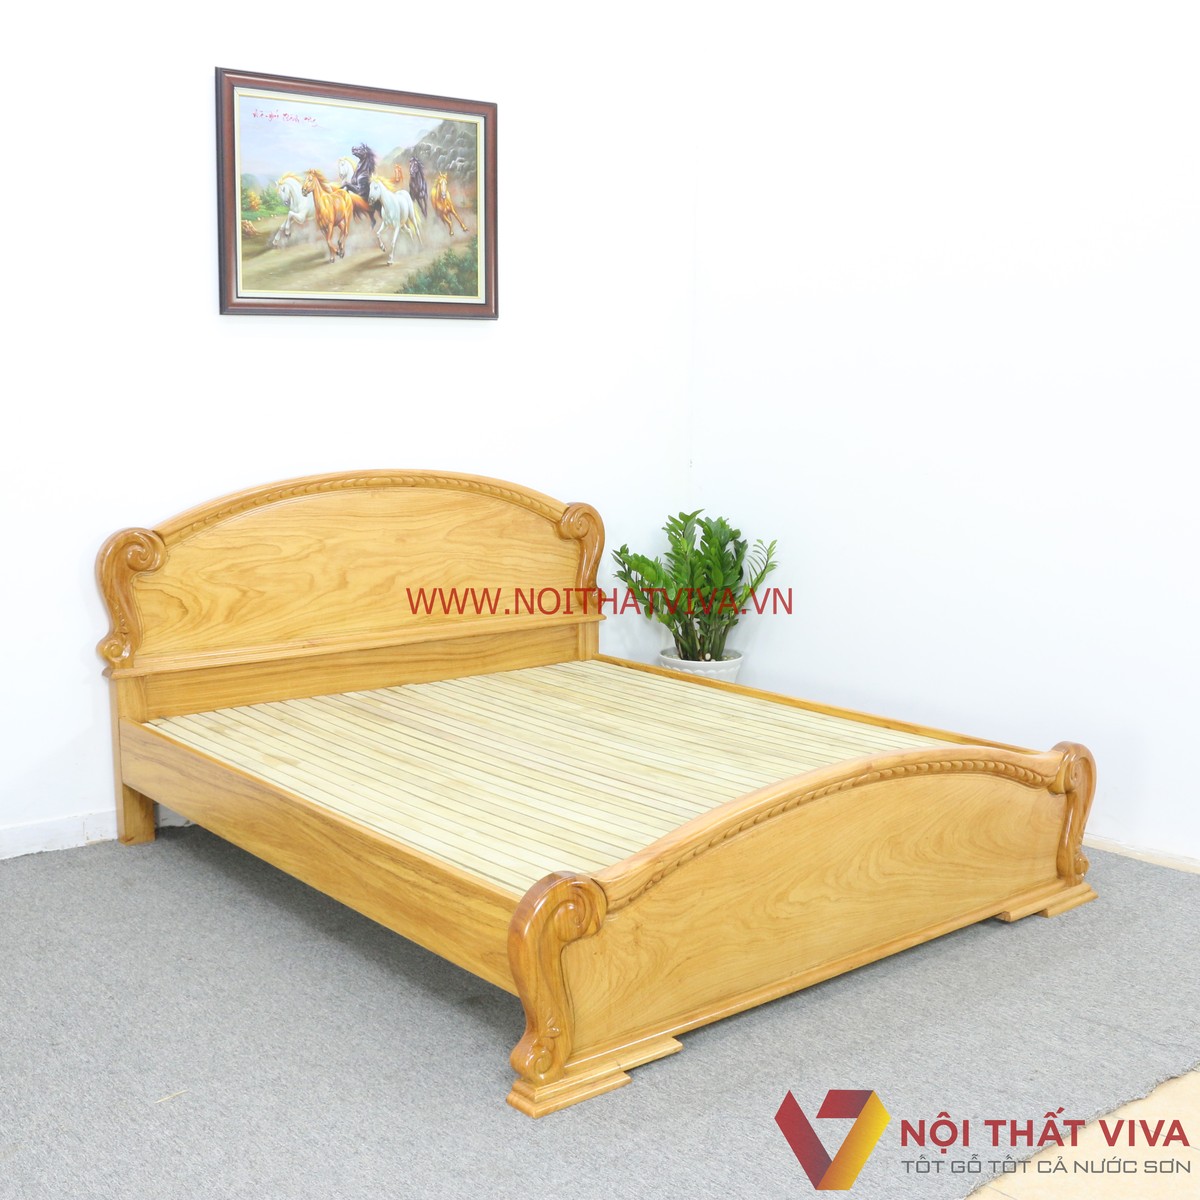 Giường ngủ gỗ gõ đỏ – đẹp sang trọng, tinh tế với chất lượng khẳng định đẳng cấp